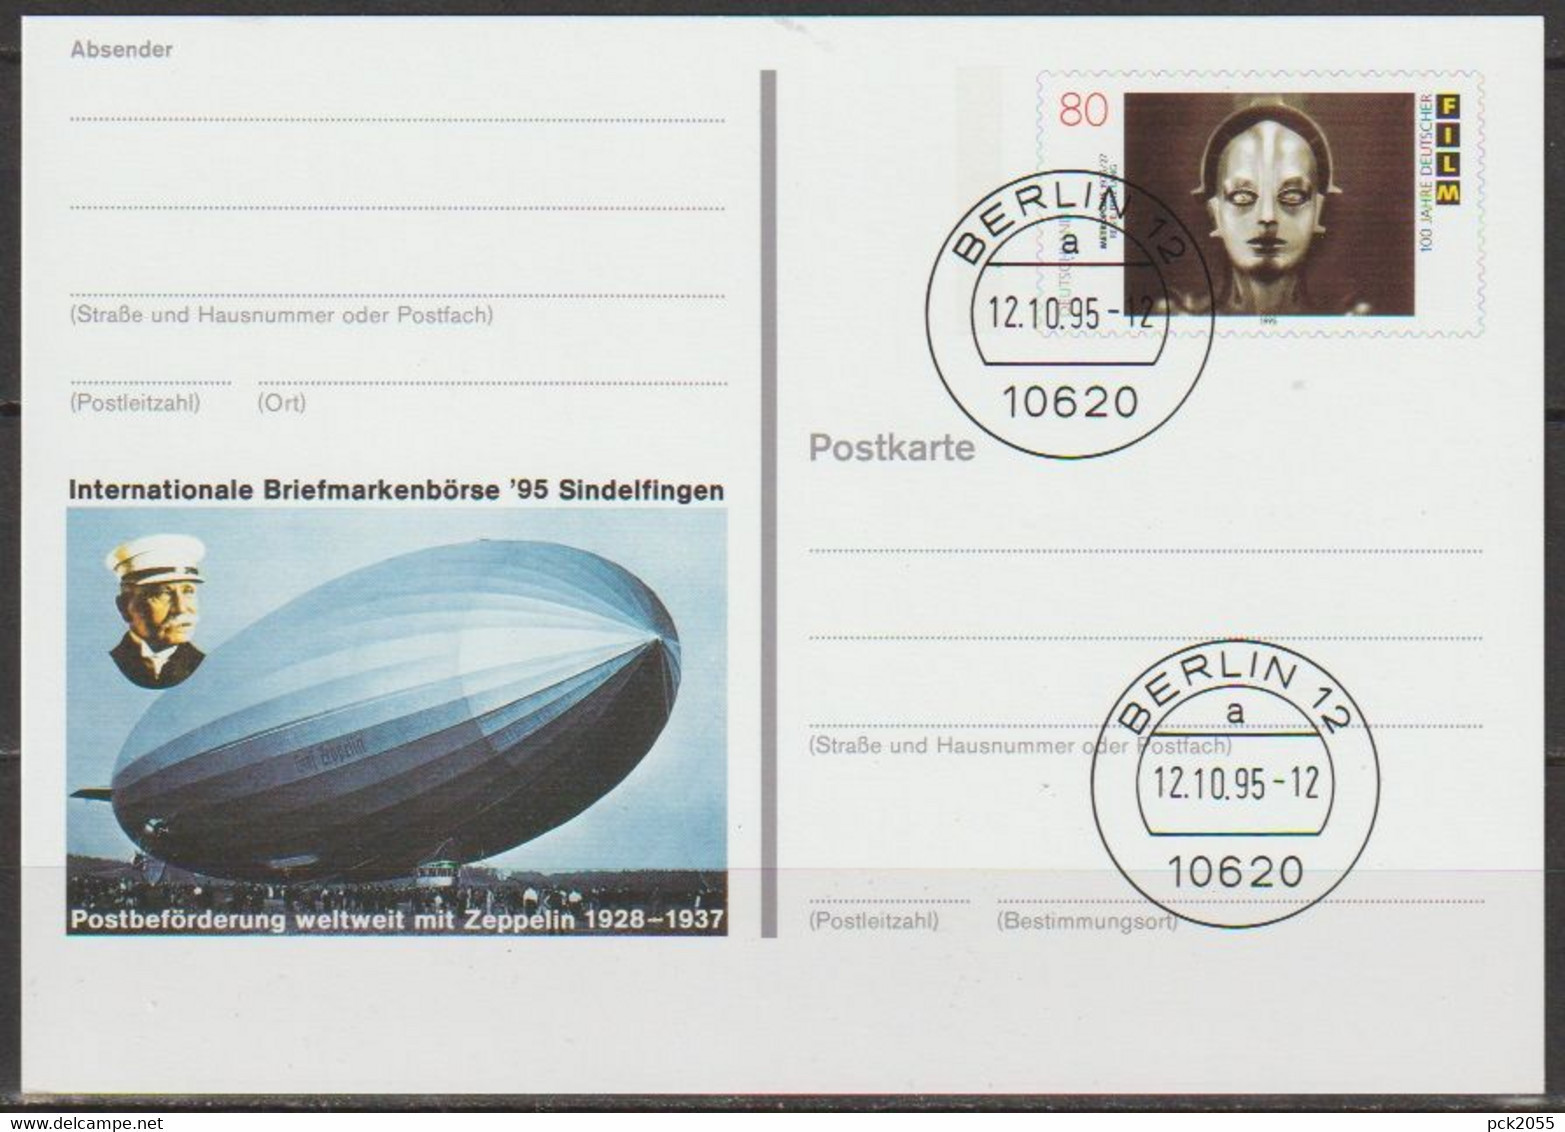 BRD Ganzsache 1995 PSo40 Briefmarkenbörse Sindelfingen Ersttagsstempel 12.10.95 Berlin  (d372)günstige Versandkosten - Postkarten - Gebraucht